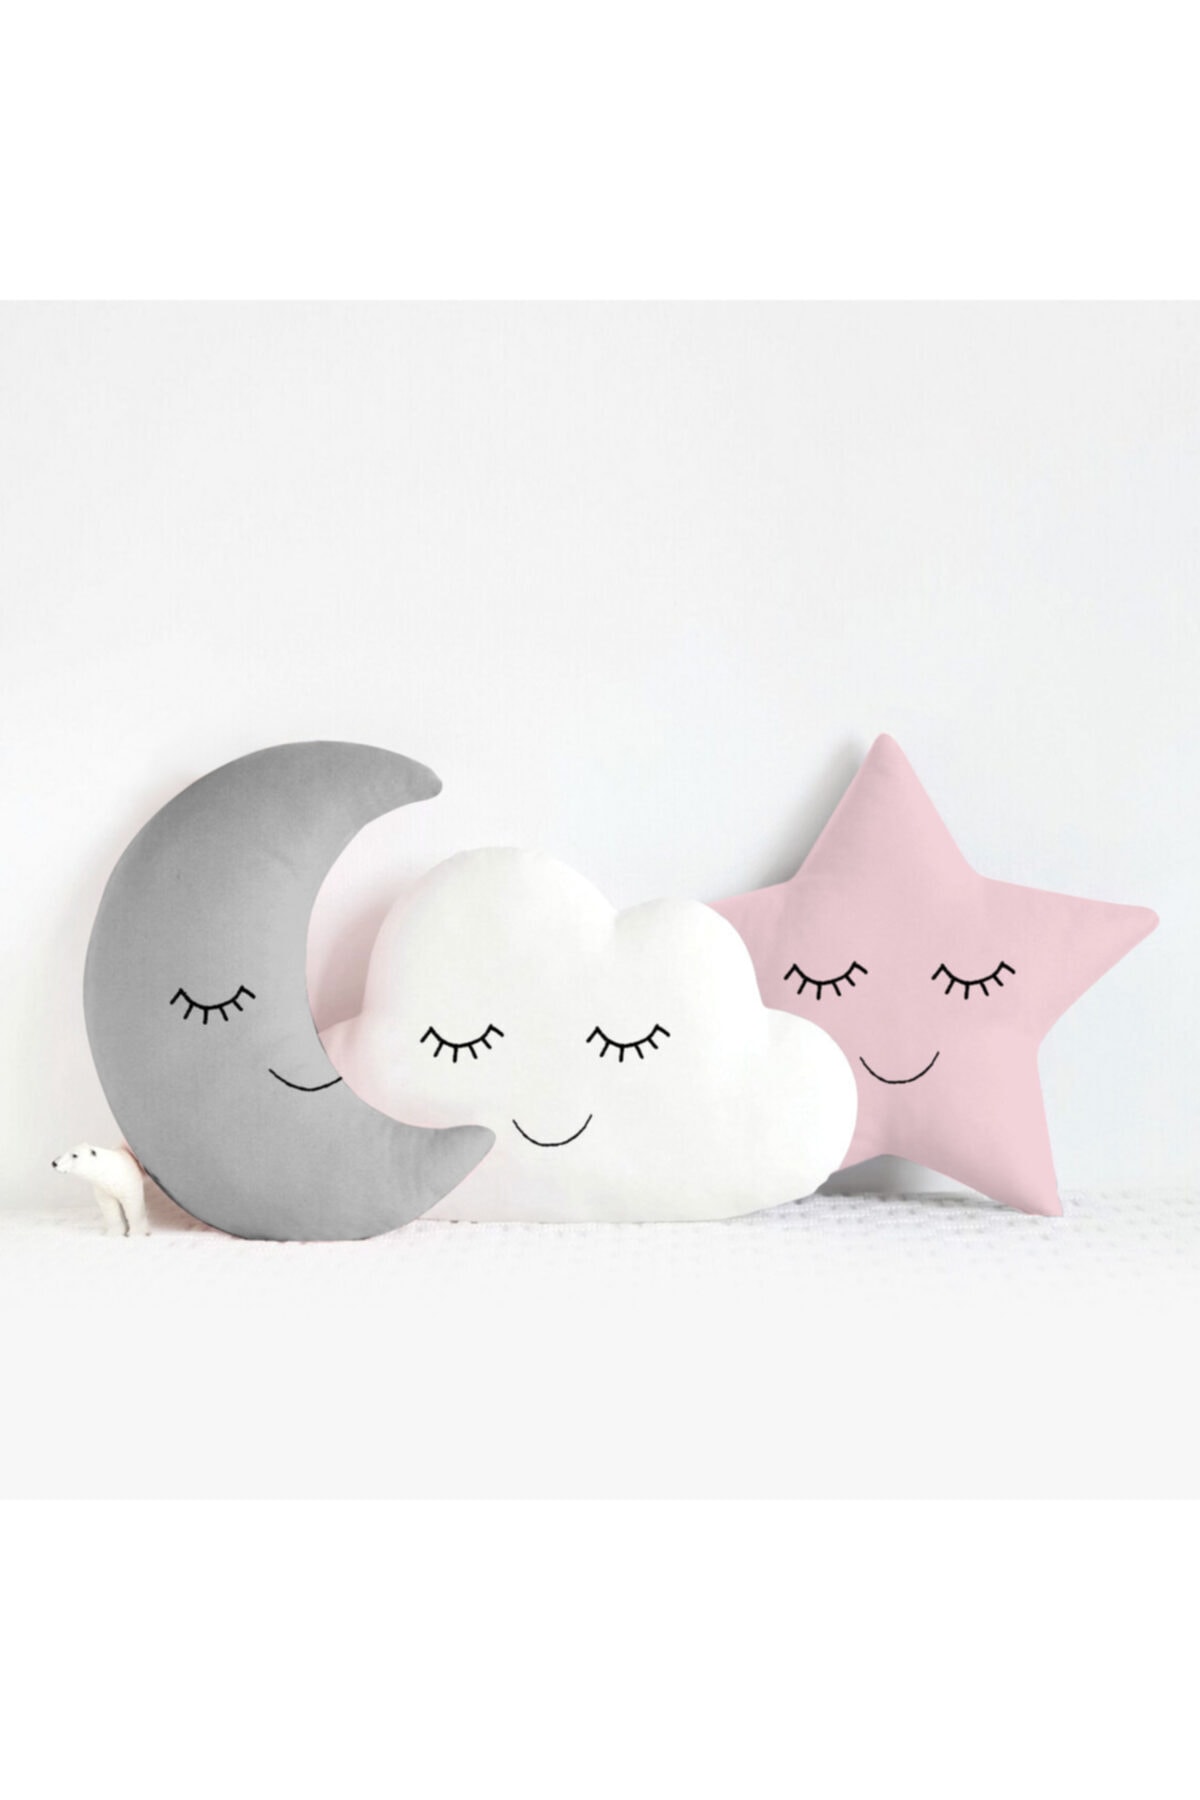 Miomundo Bebek Ve Çocuk Odası Ay-yıldız-bulut Uyku Arkadaşları Süs Yastıkları Üçlü Kombin Gri Beyaz Pembe